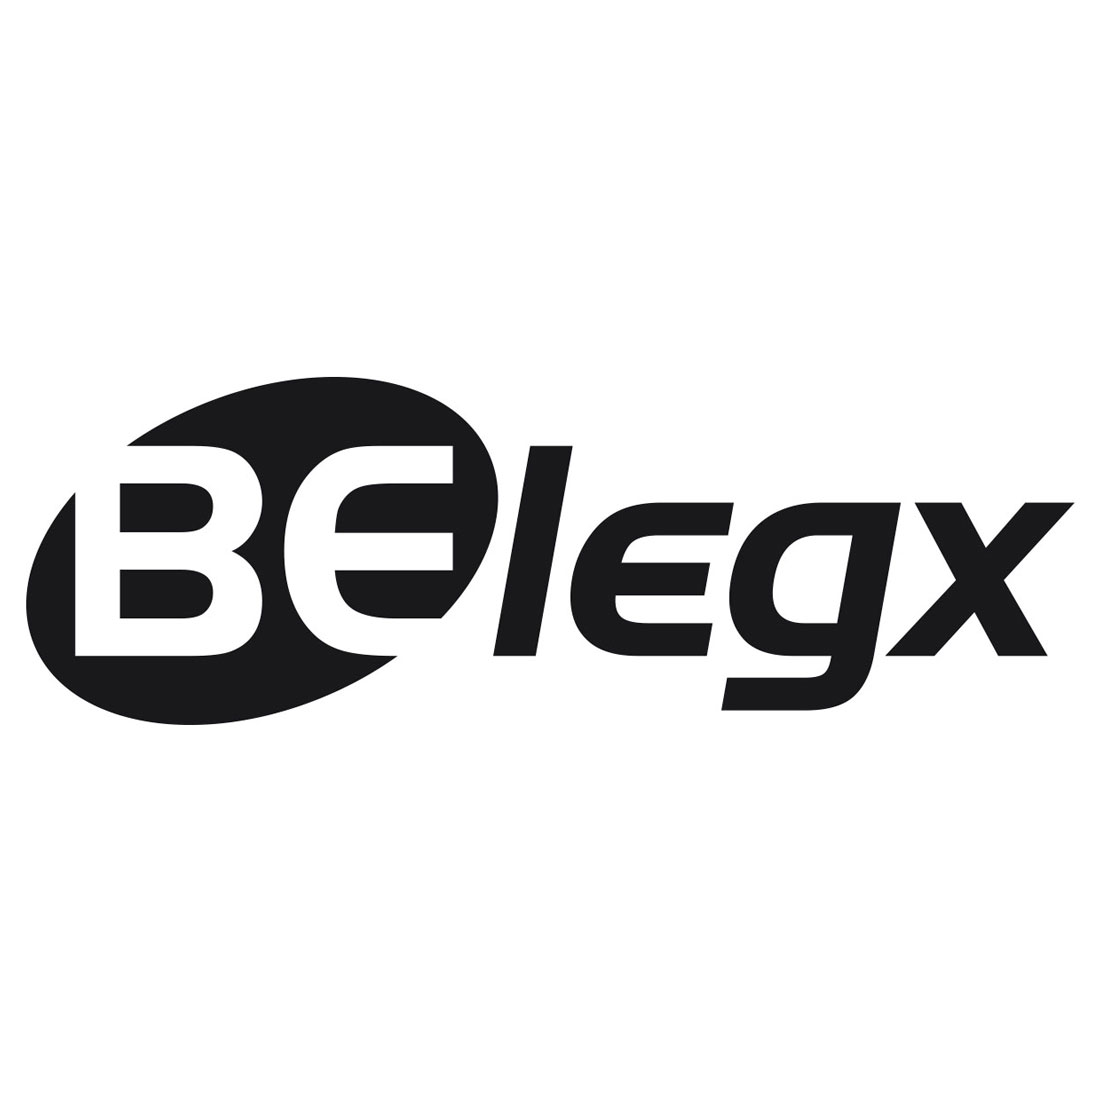 ACCESSOIRE D'AQUAGYM BELEGX BECO - Logo